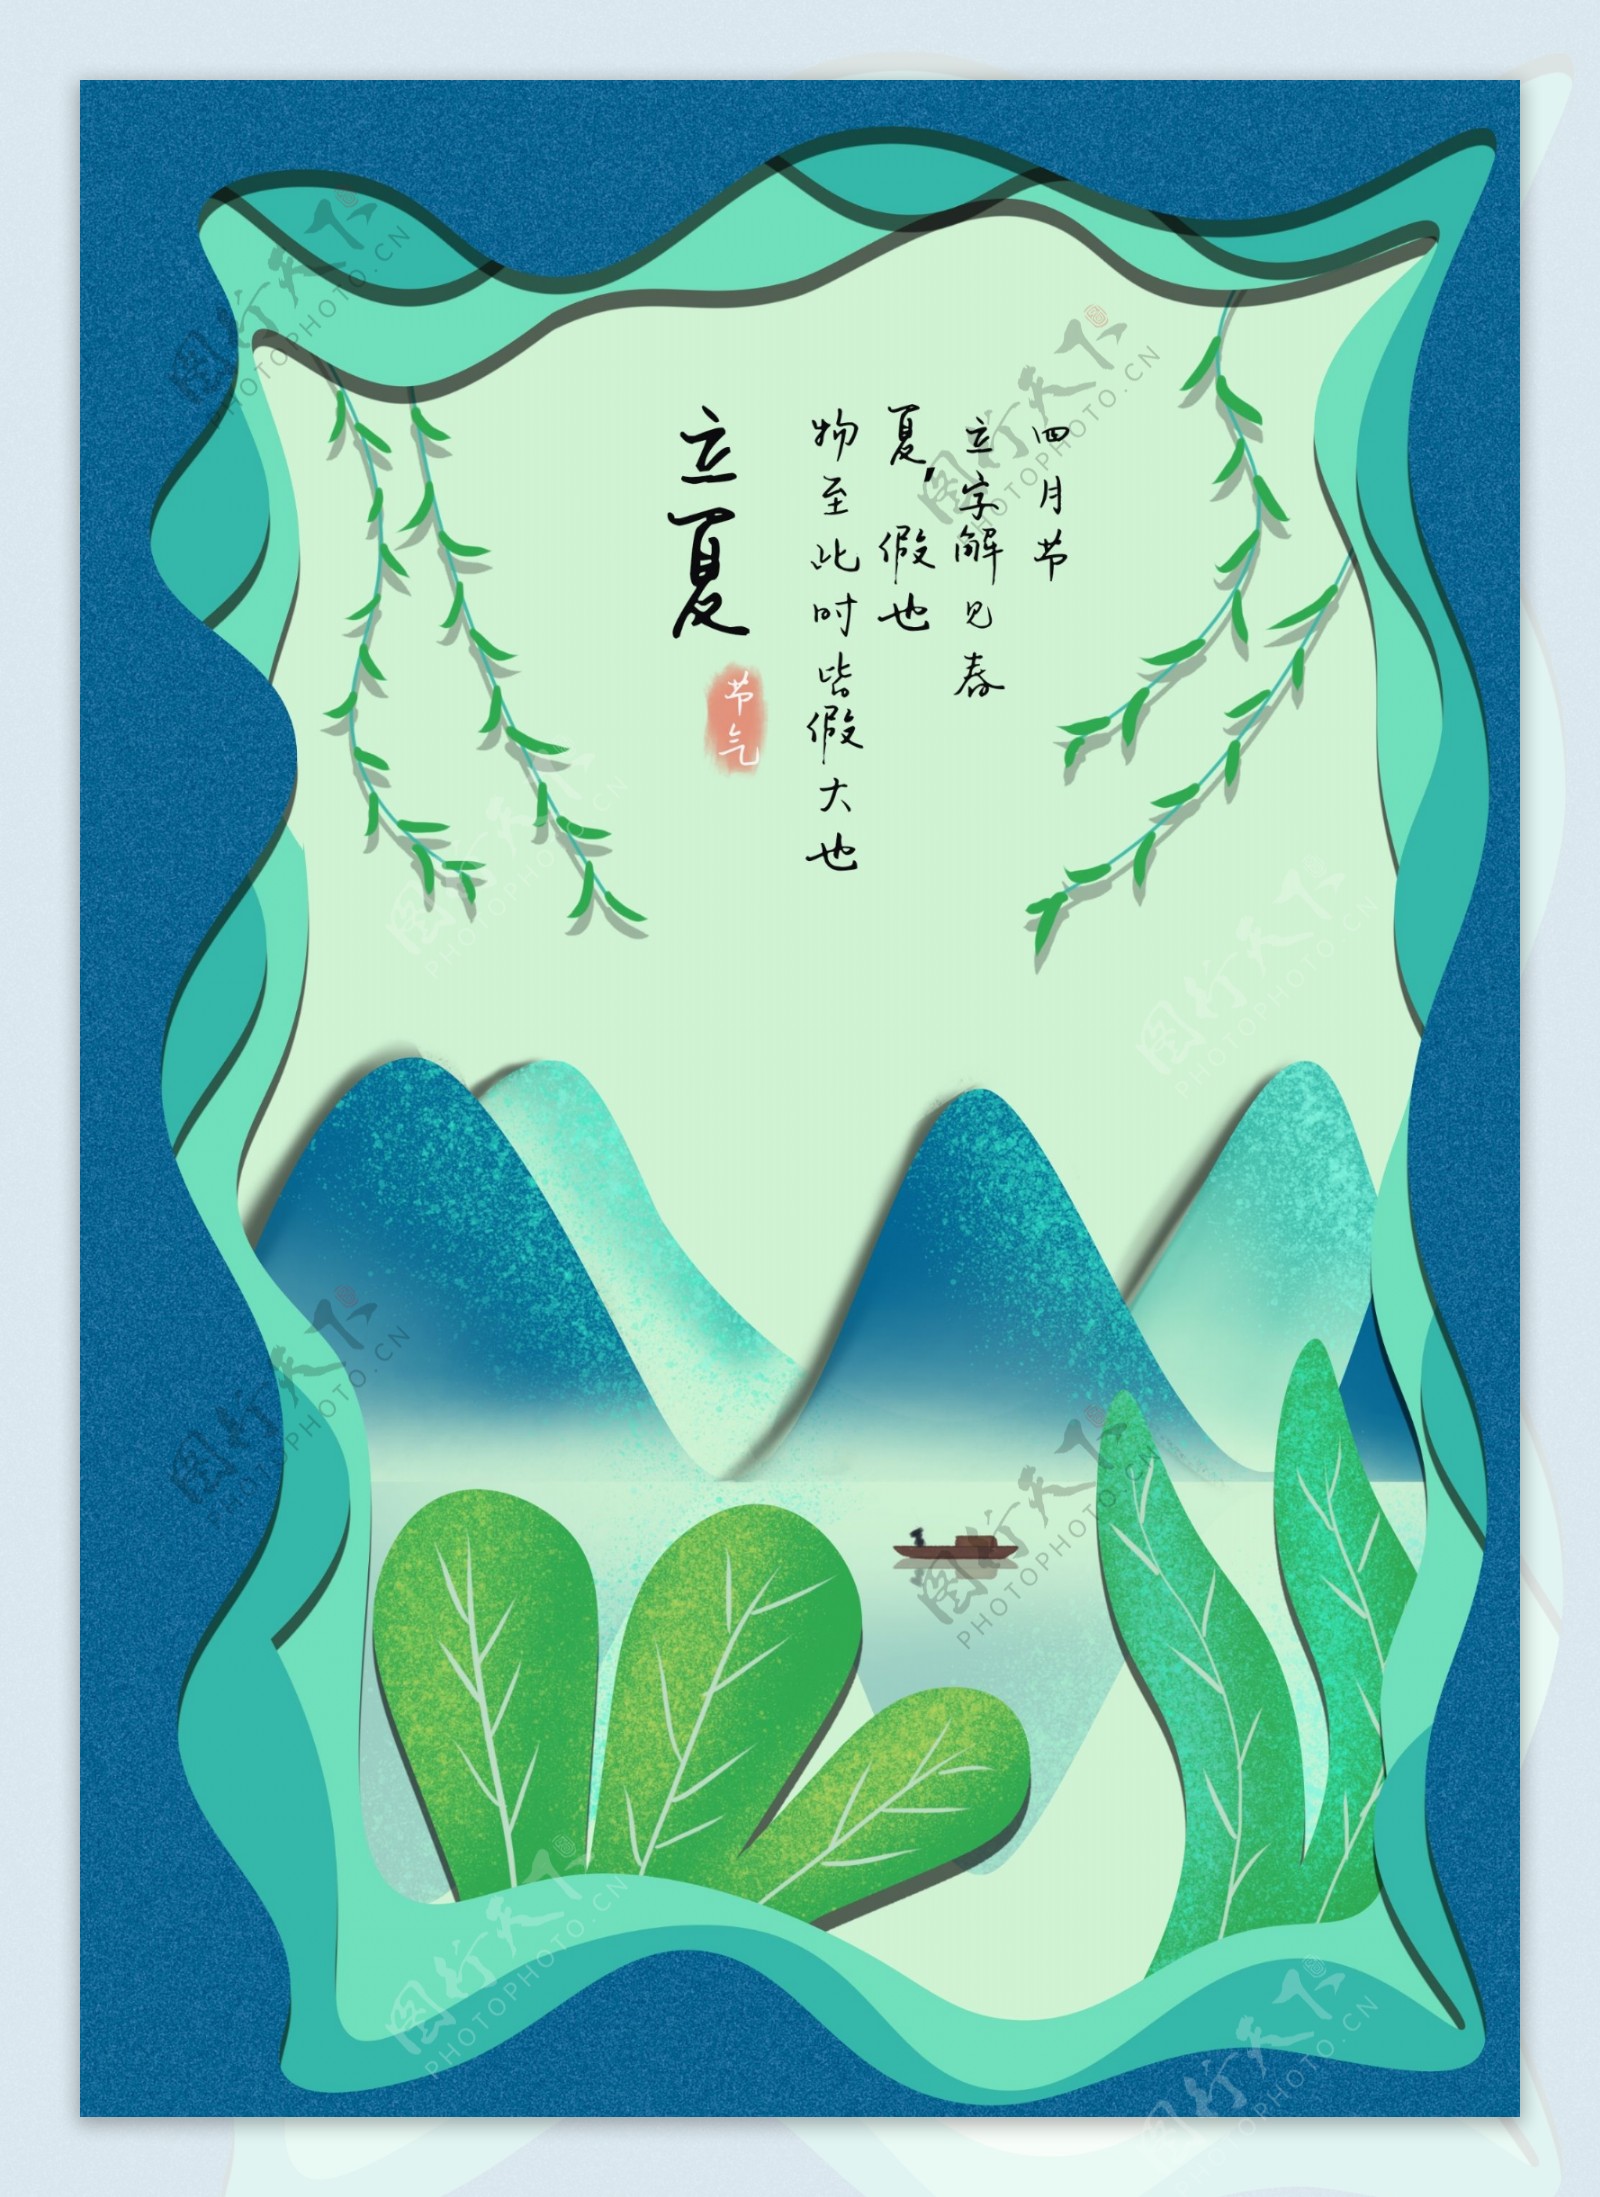 印象剪纸风立夏中国风山水画二十四节气插画